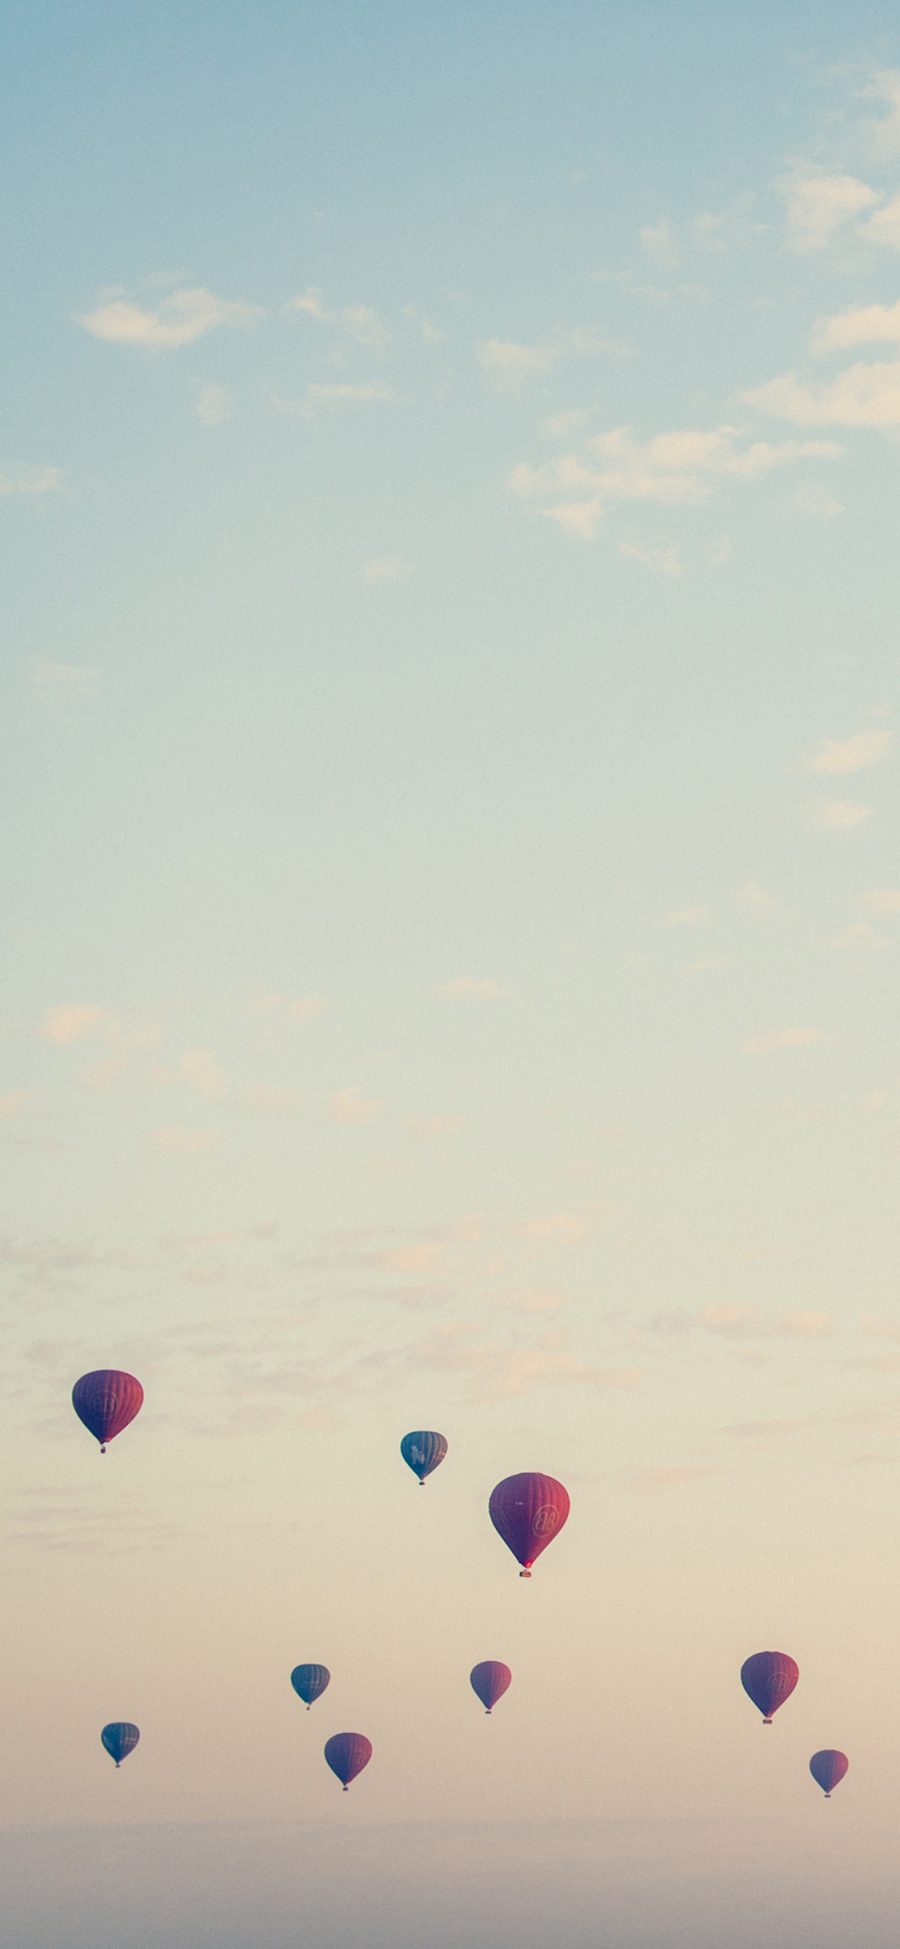 [2436×1125]热气球 上升 高空 远眺 苹果手机壁纸图片